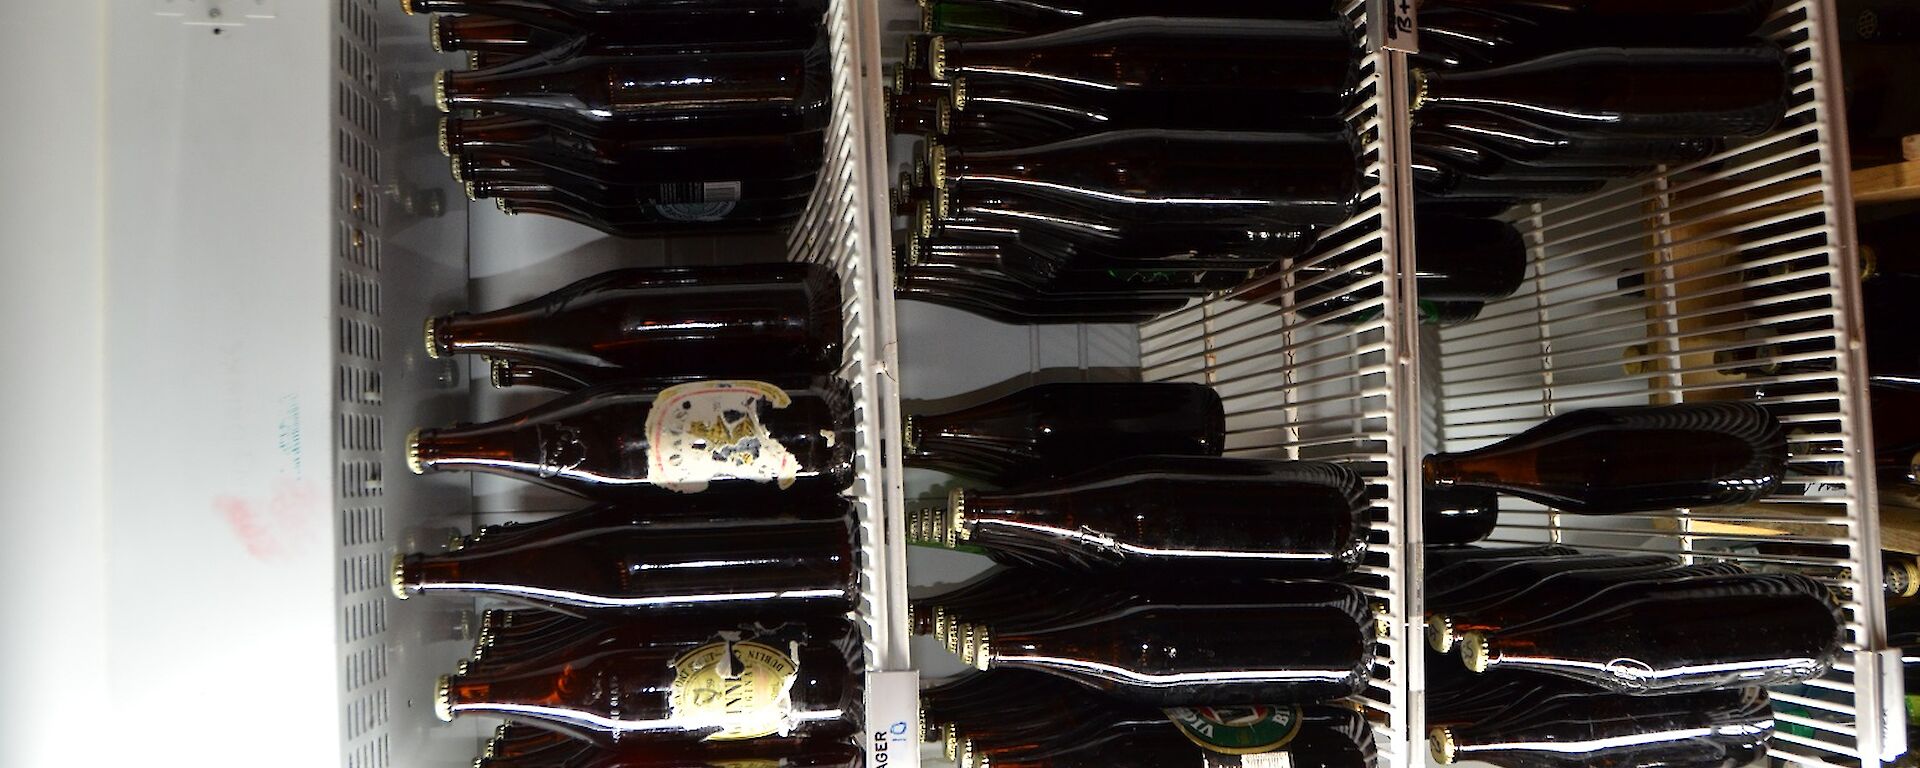 A fridge full of beer bottles